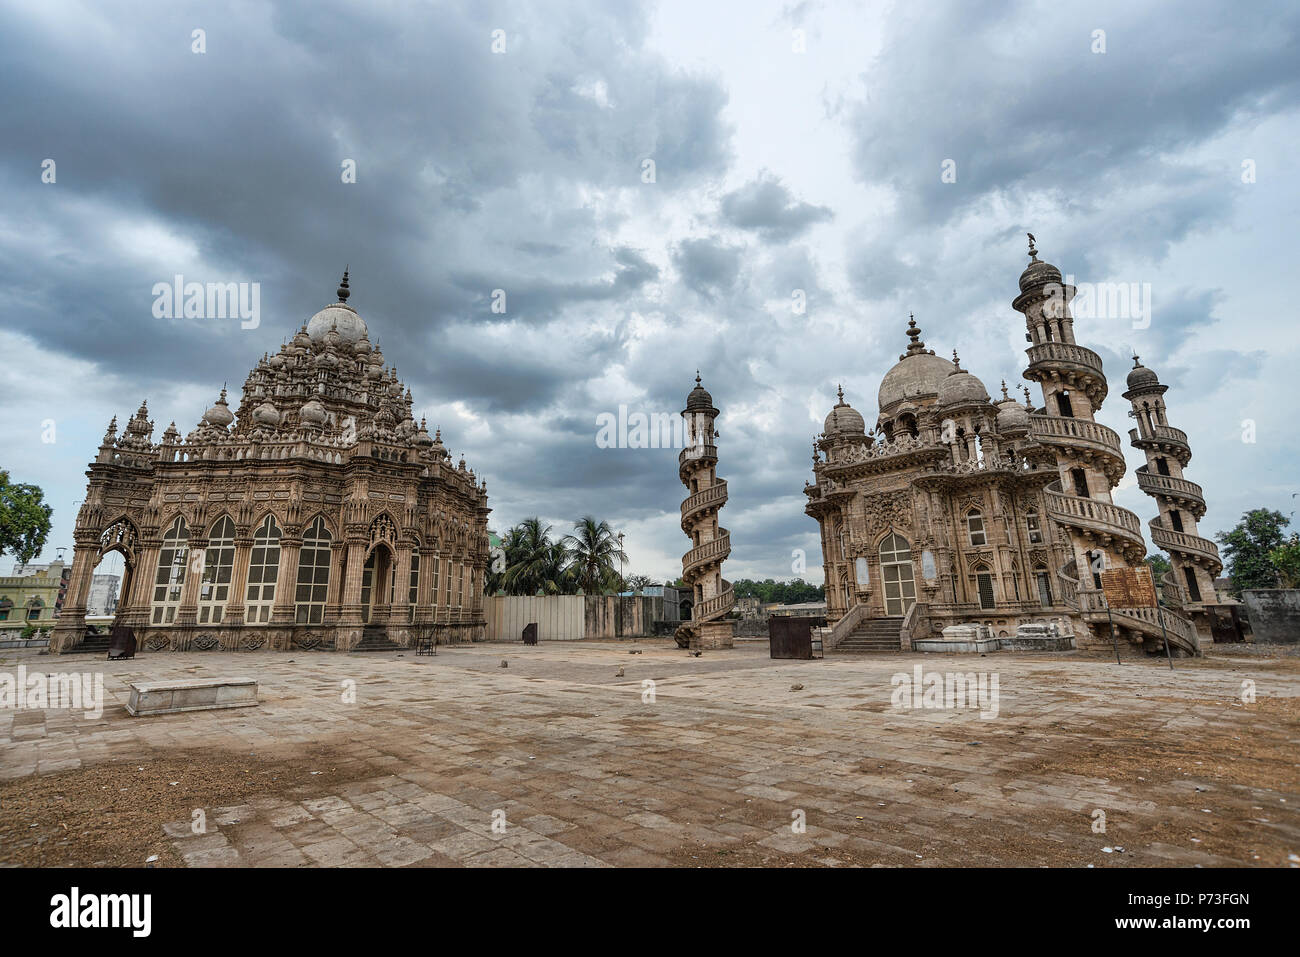 Des images grand angle de Mahabat Maqbara un tombeau de fois Mughal, un monument de l'architecture patrimoine négligé à Junagadh, Gujarat, Inde - nuages spectaculaires Banque D'Images